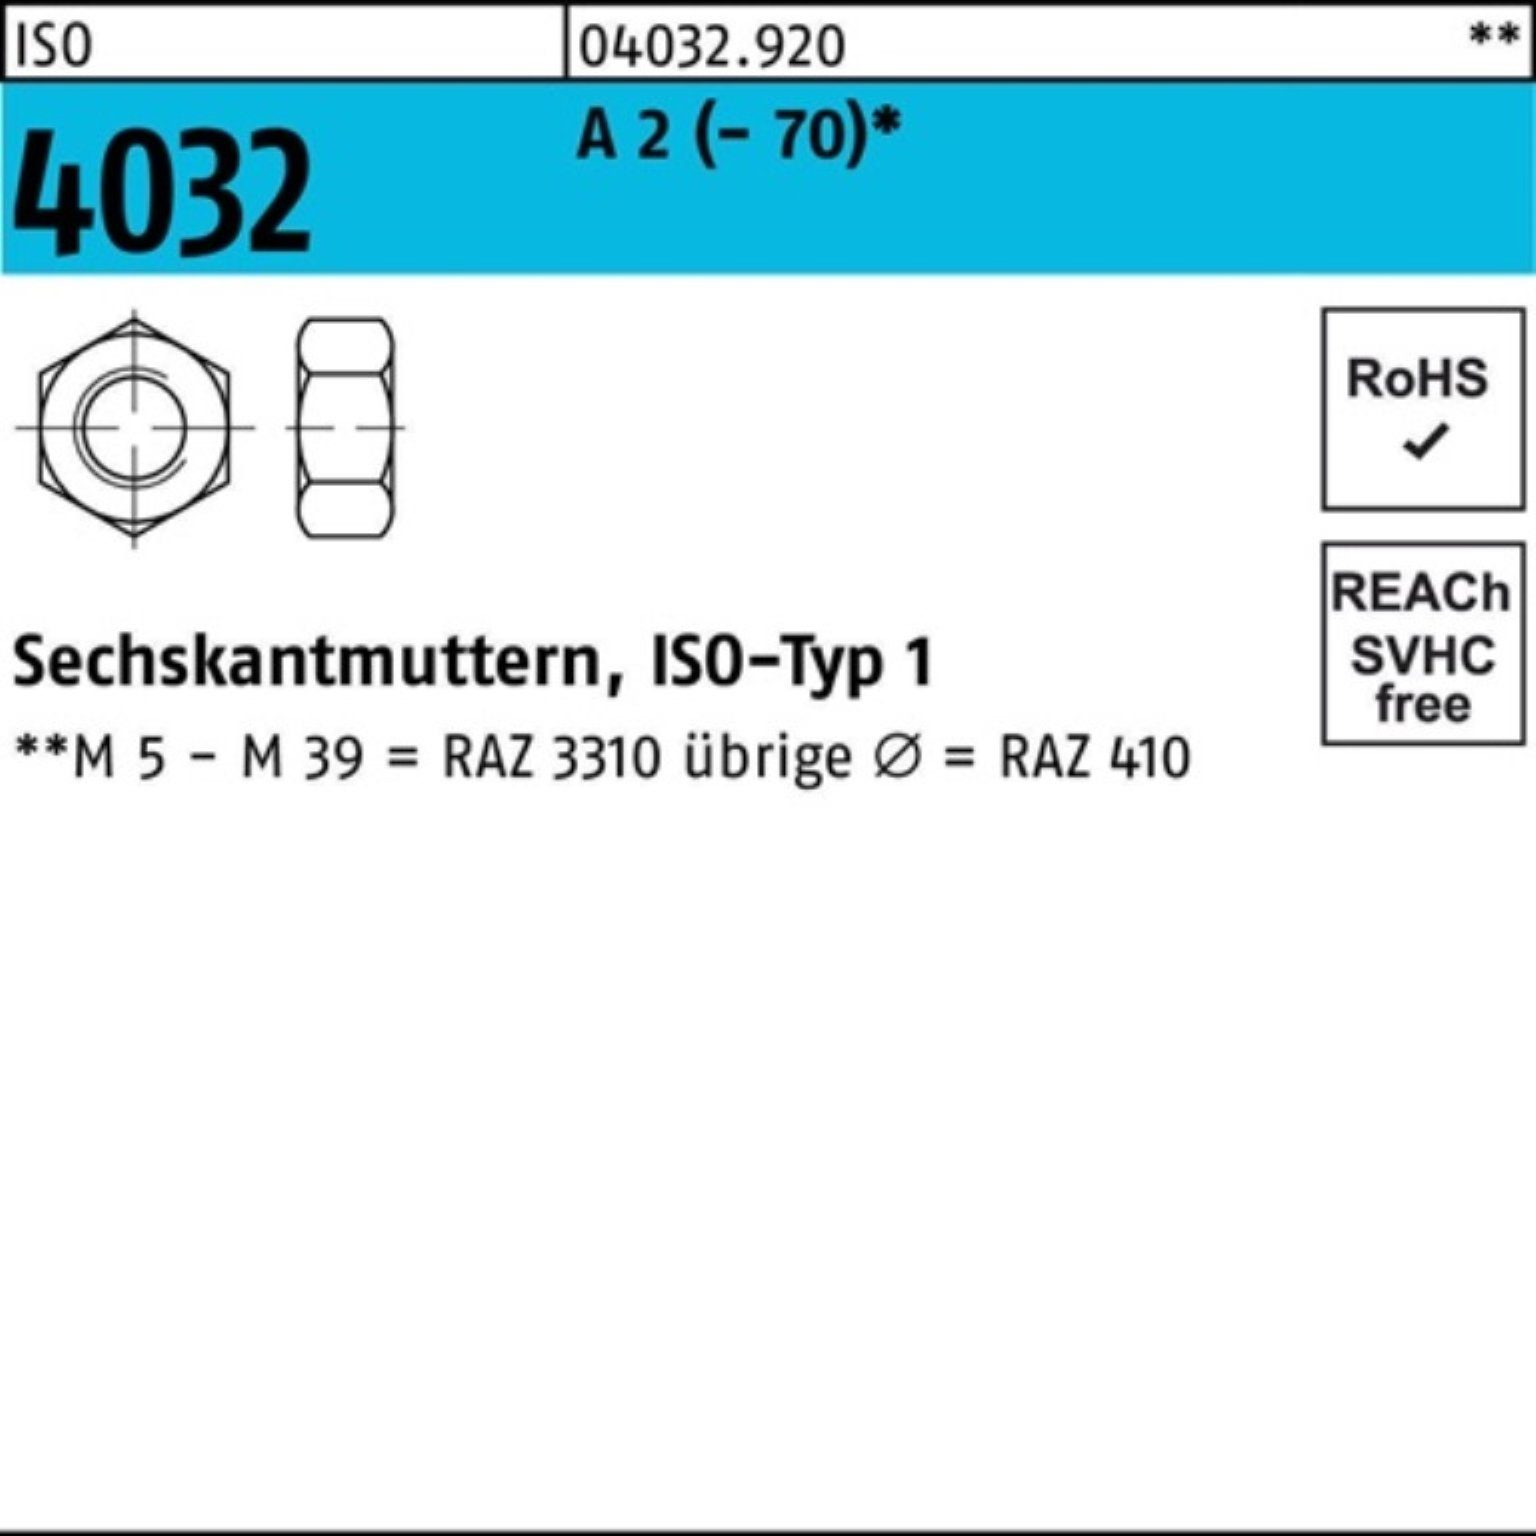 Bufab Muttern 100er Pack A 4032 4032 ISO A - 1 Stück M42 70 Sechskantmutter 2 2 ISO